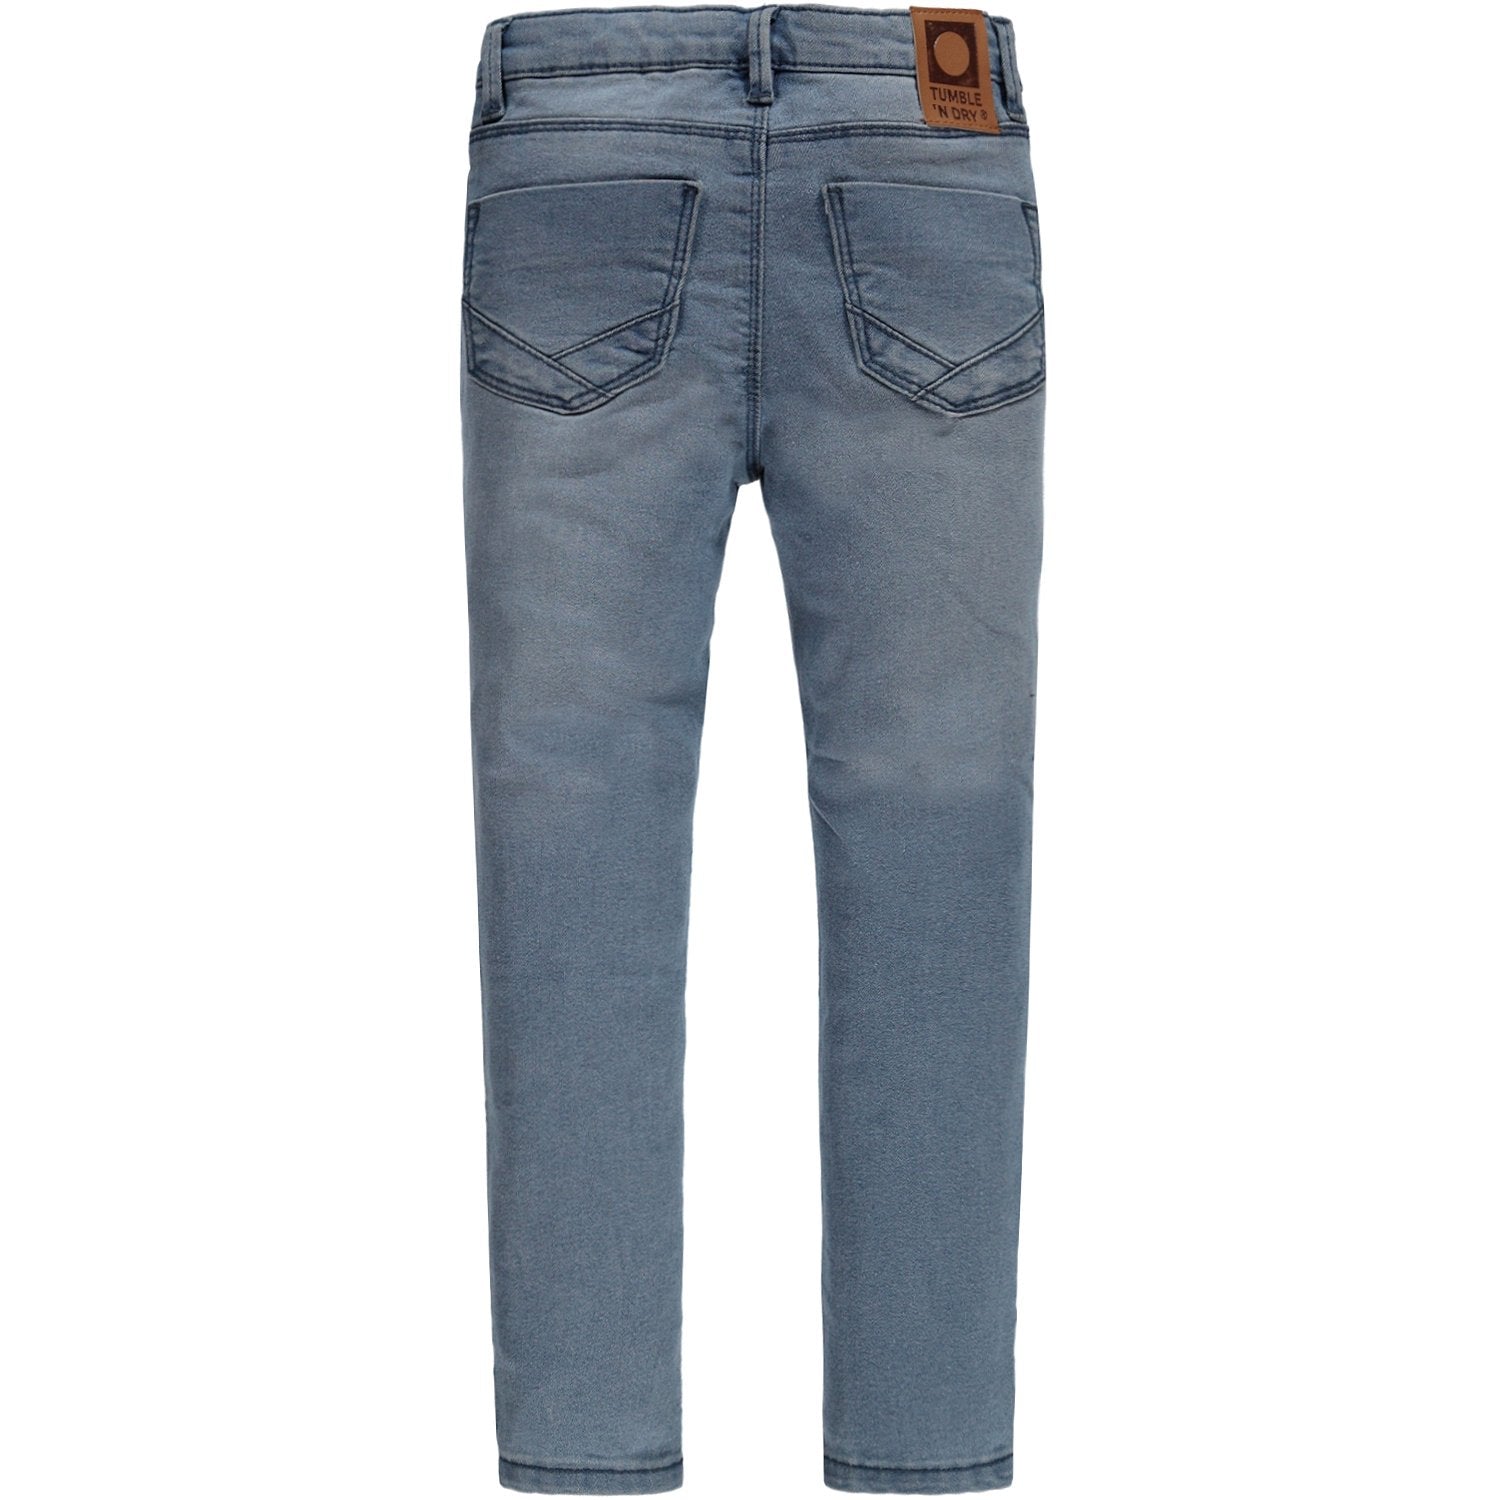 Meisjes Broek Jeans lang van Tumble 'n Dry in de kleur Denim mid blue in maat 128.